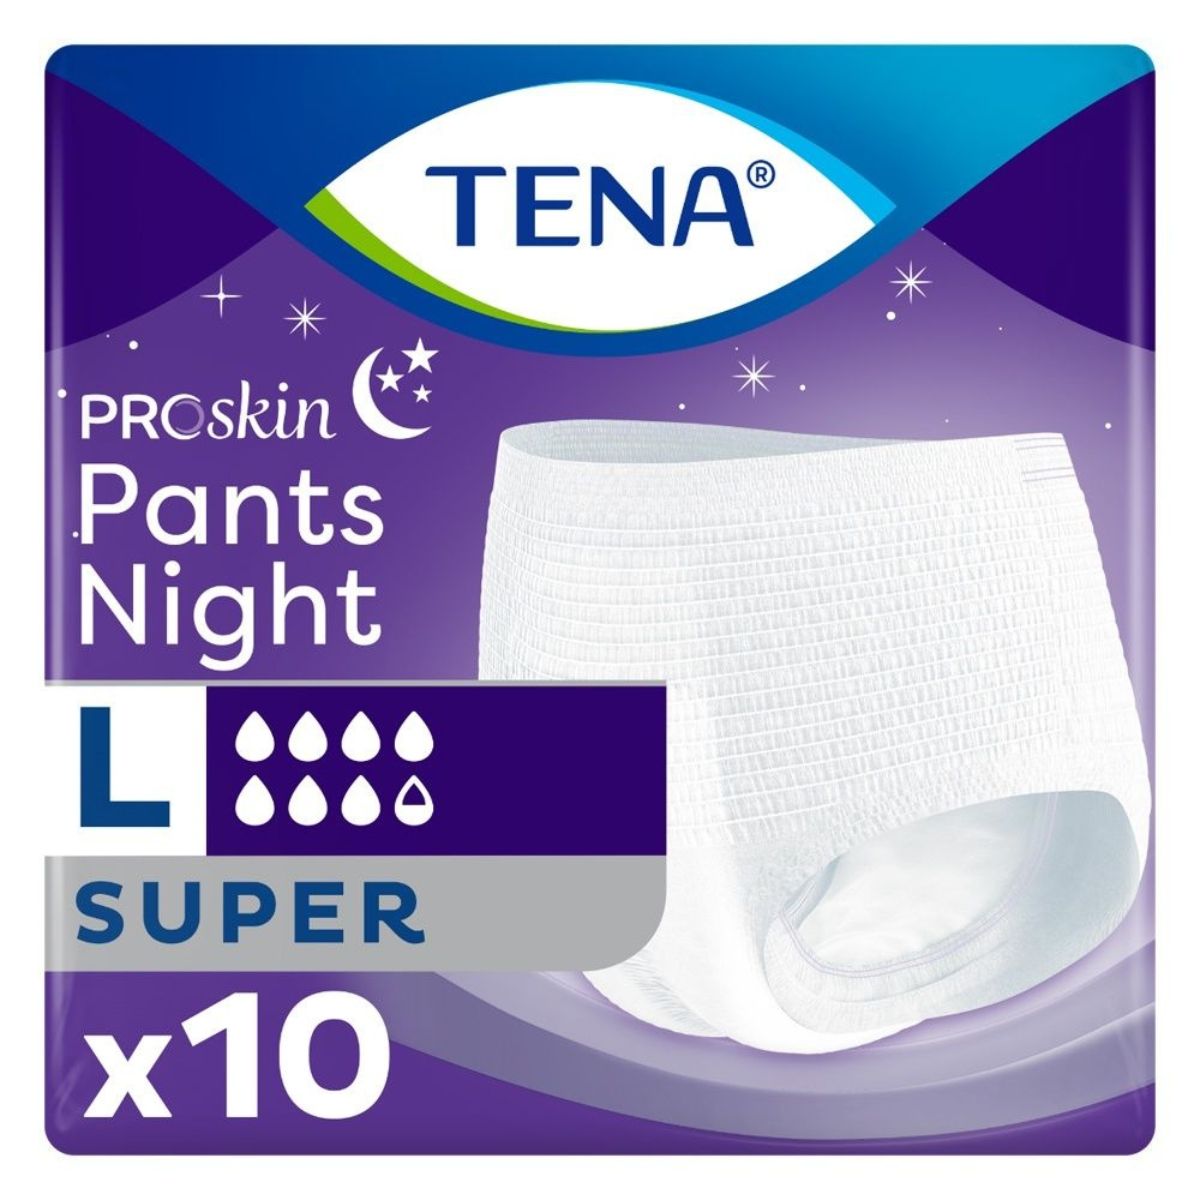 kennisgeving Doorweekt professioneel TENA ProSkin Pants Night Super Large 10 stuks kopen? | Merkala.nl